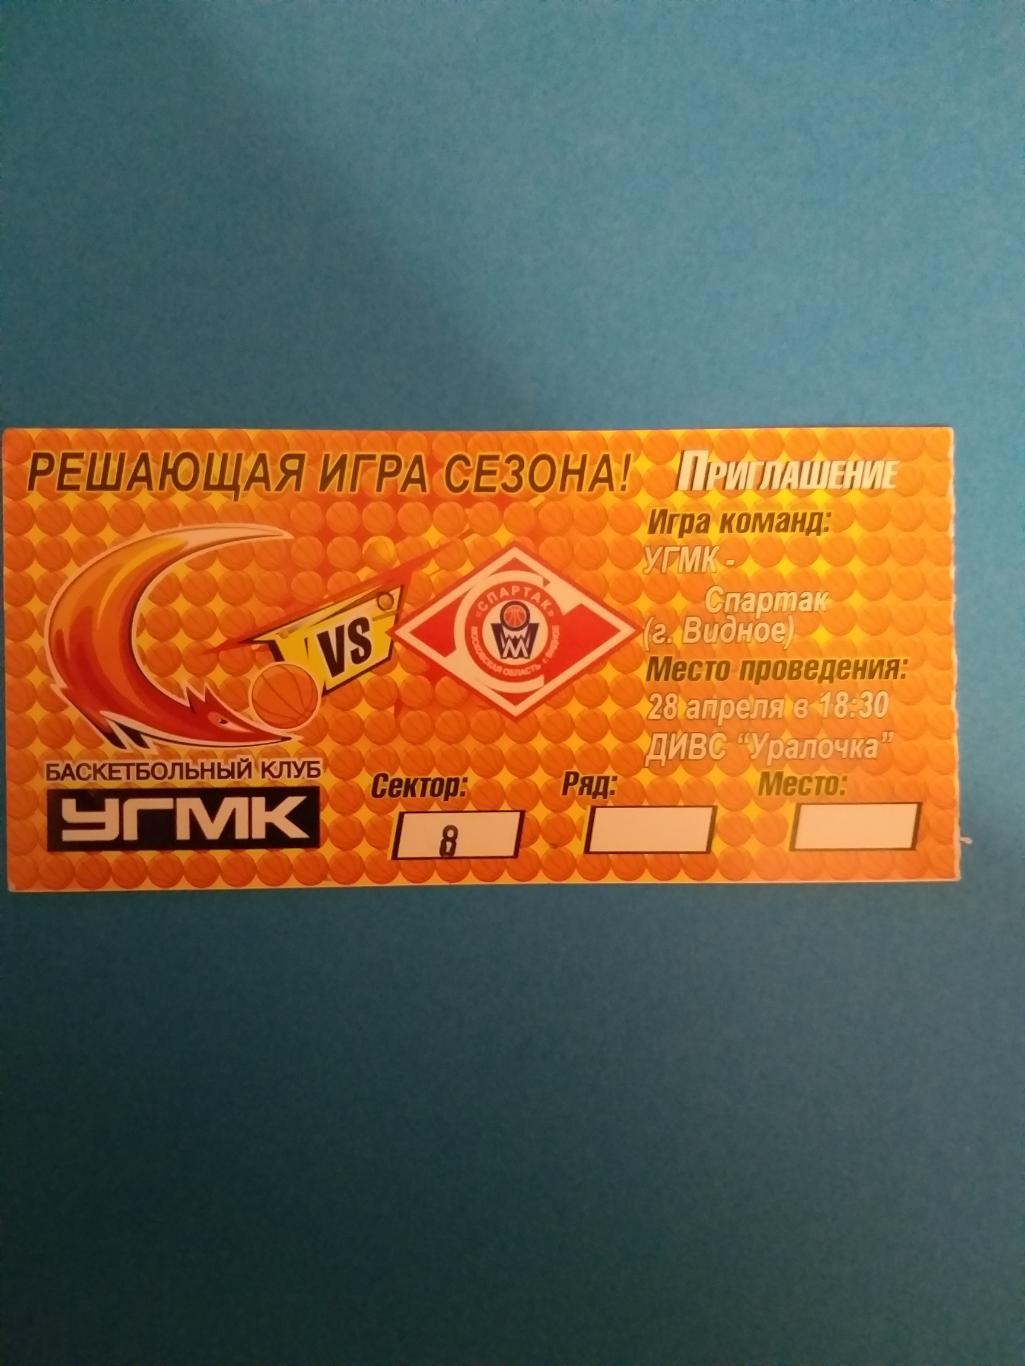 УГМК(Екатеринбург)-Спартак(В идное) 28.04.2010 билет